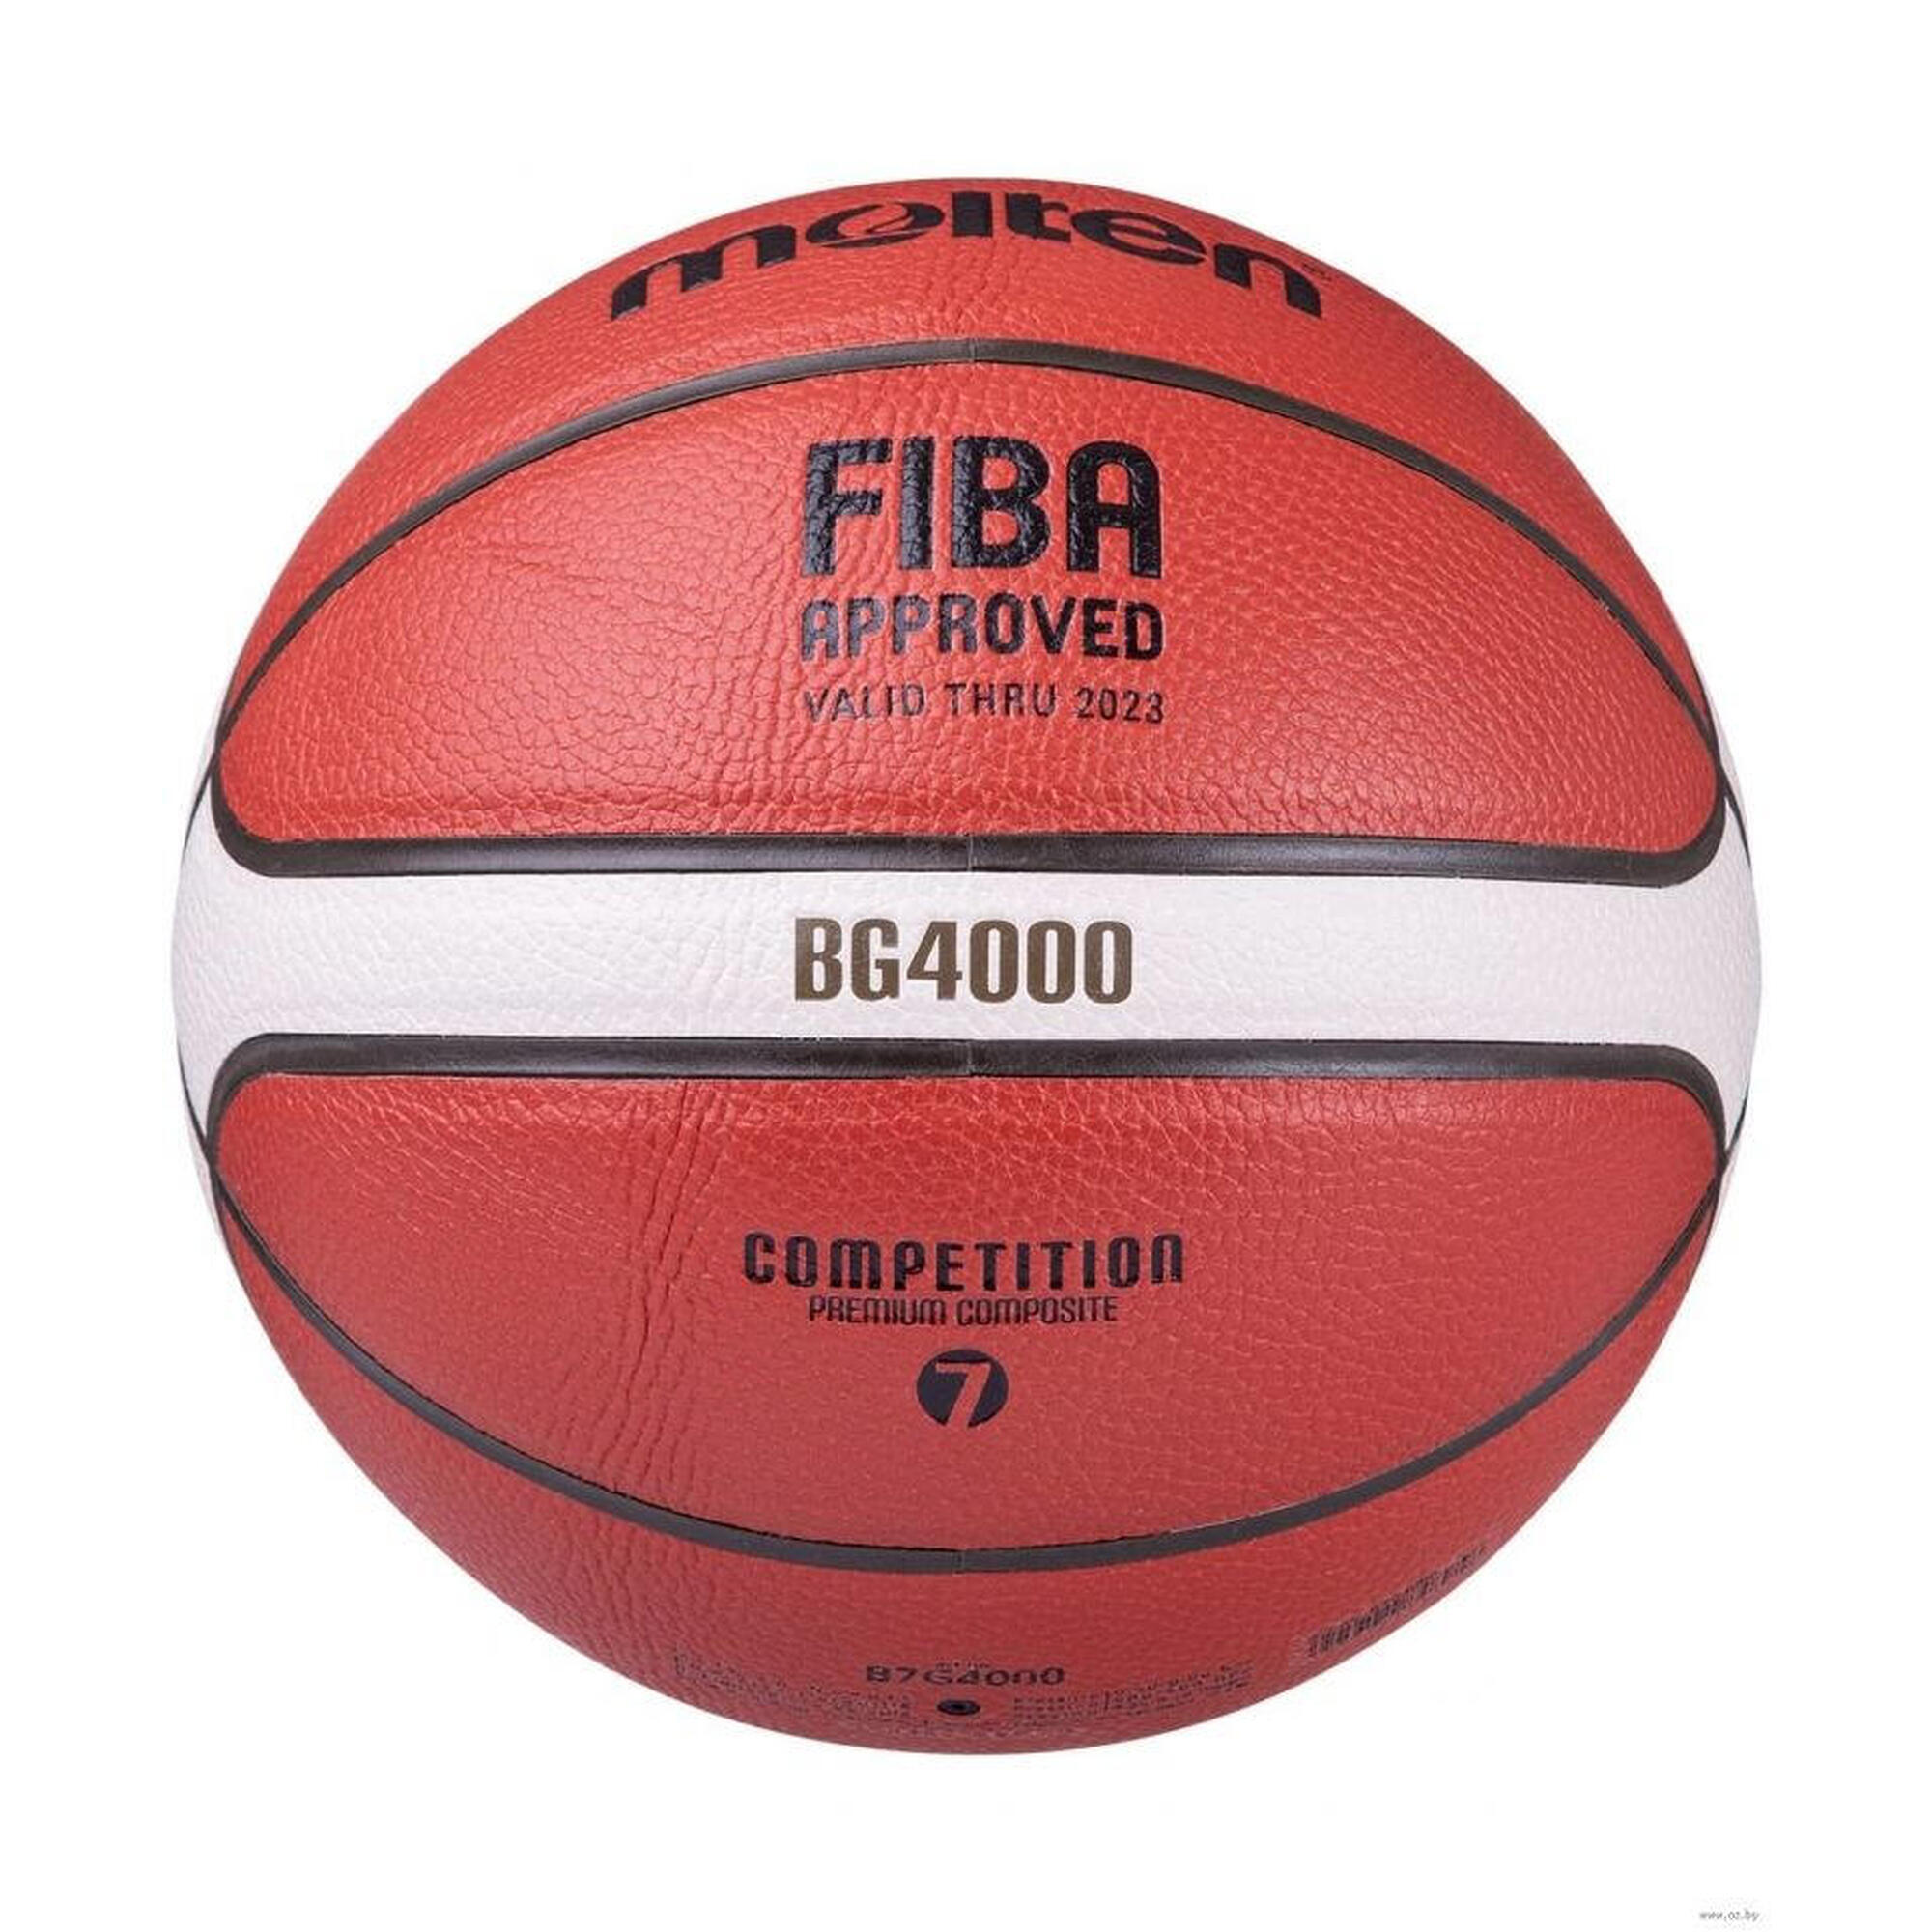 Molten Basketball BG4000